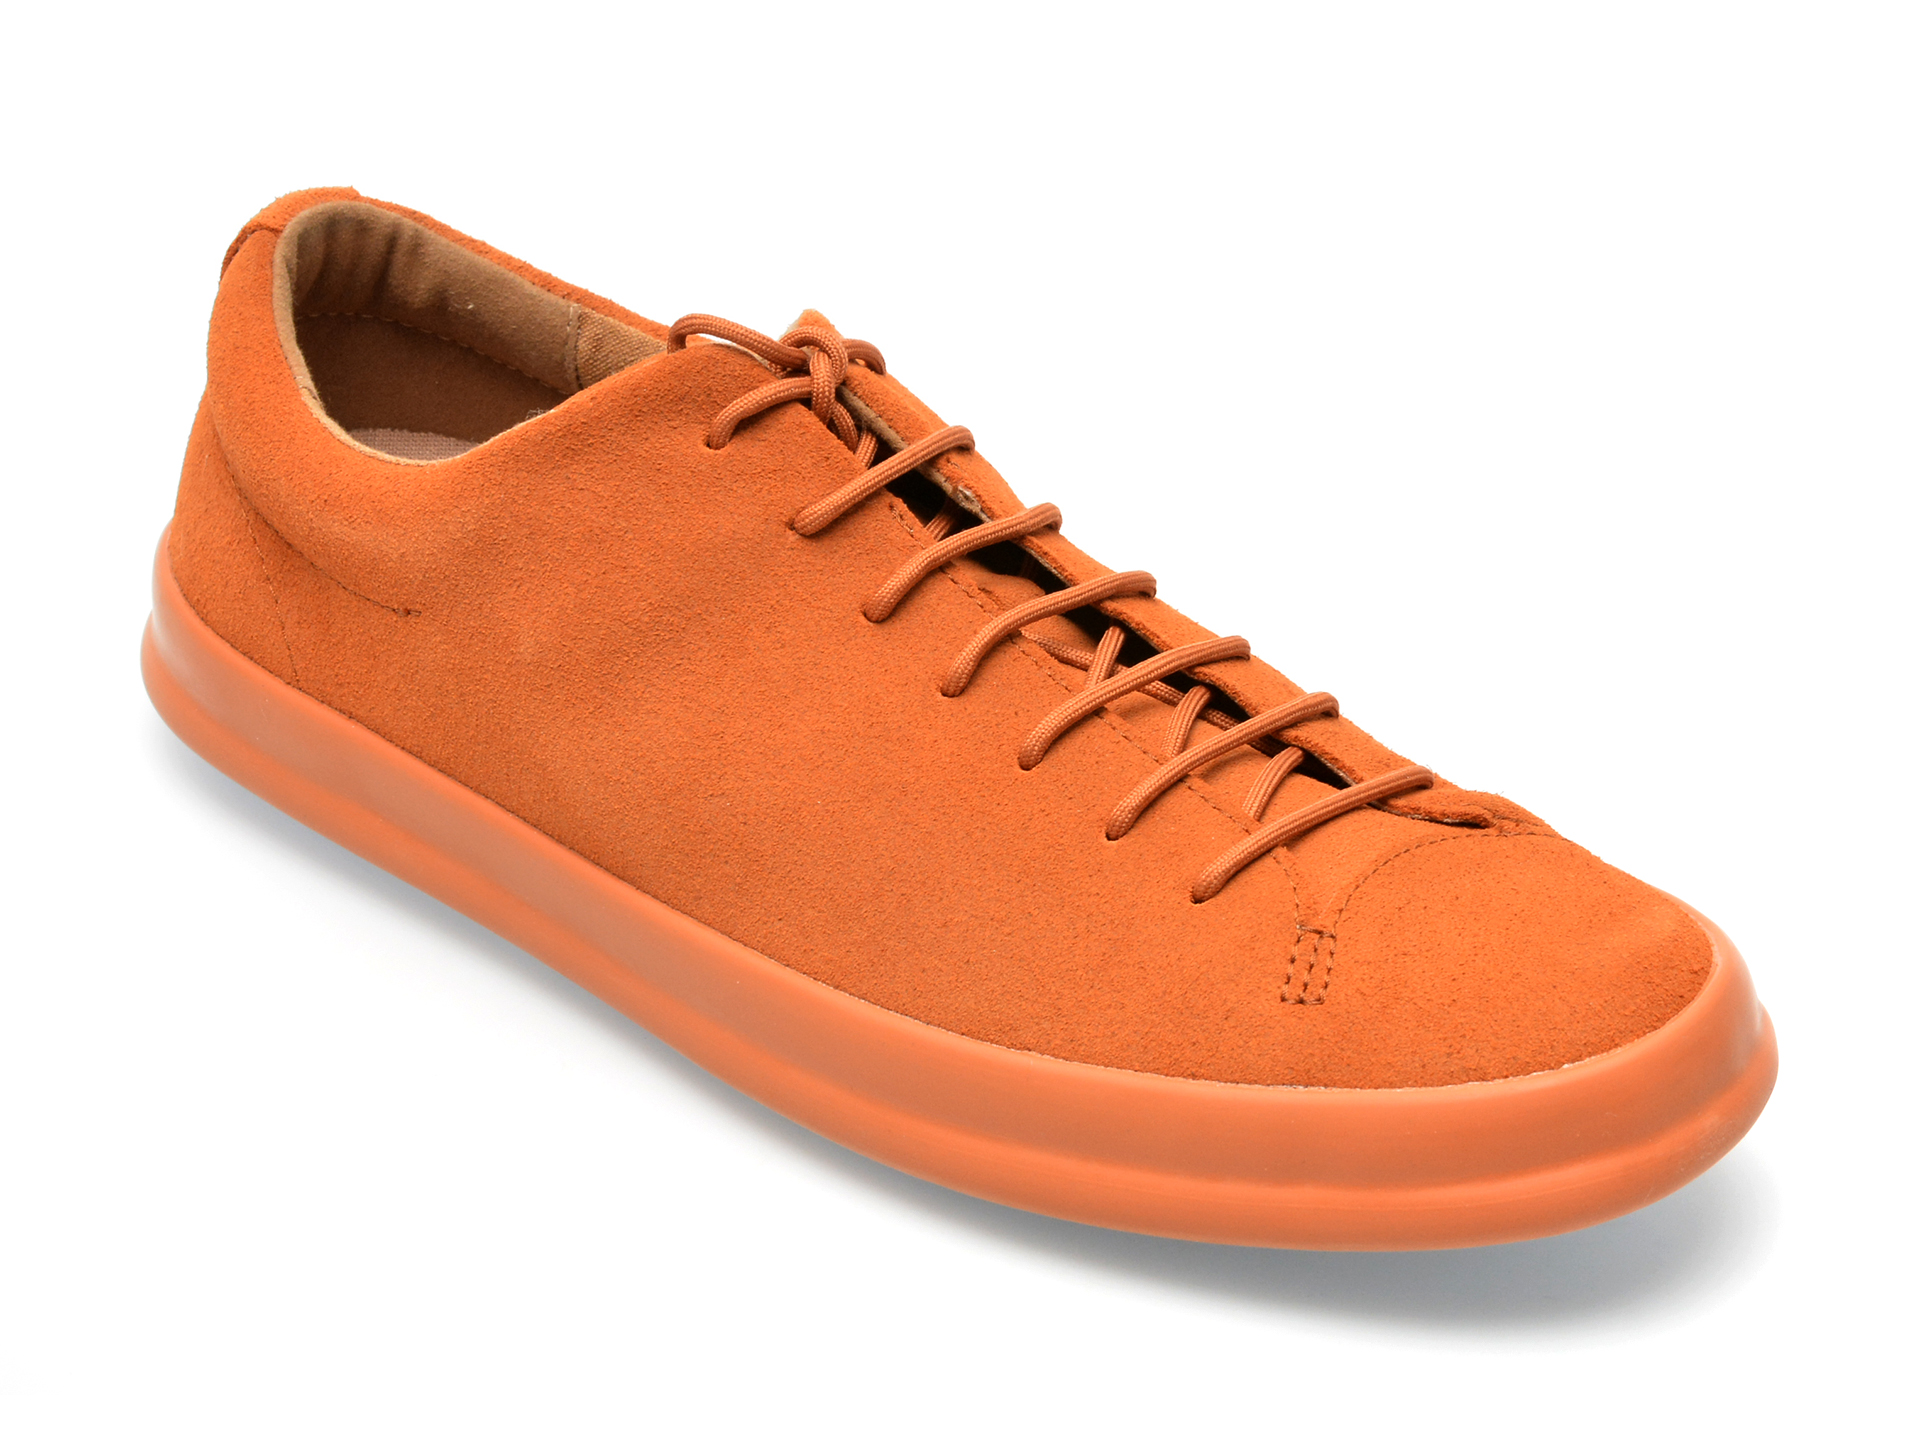 Pantofi CAMPER maro, K100373, din piele naturala /barbati/pantofi